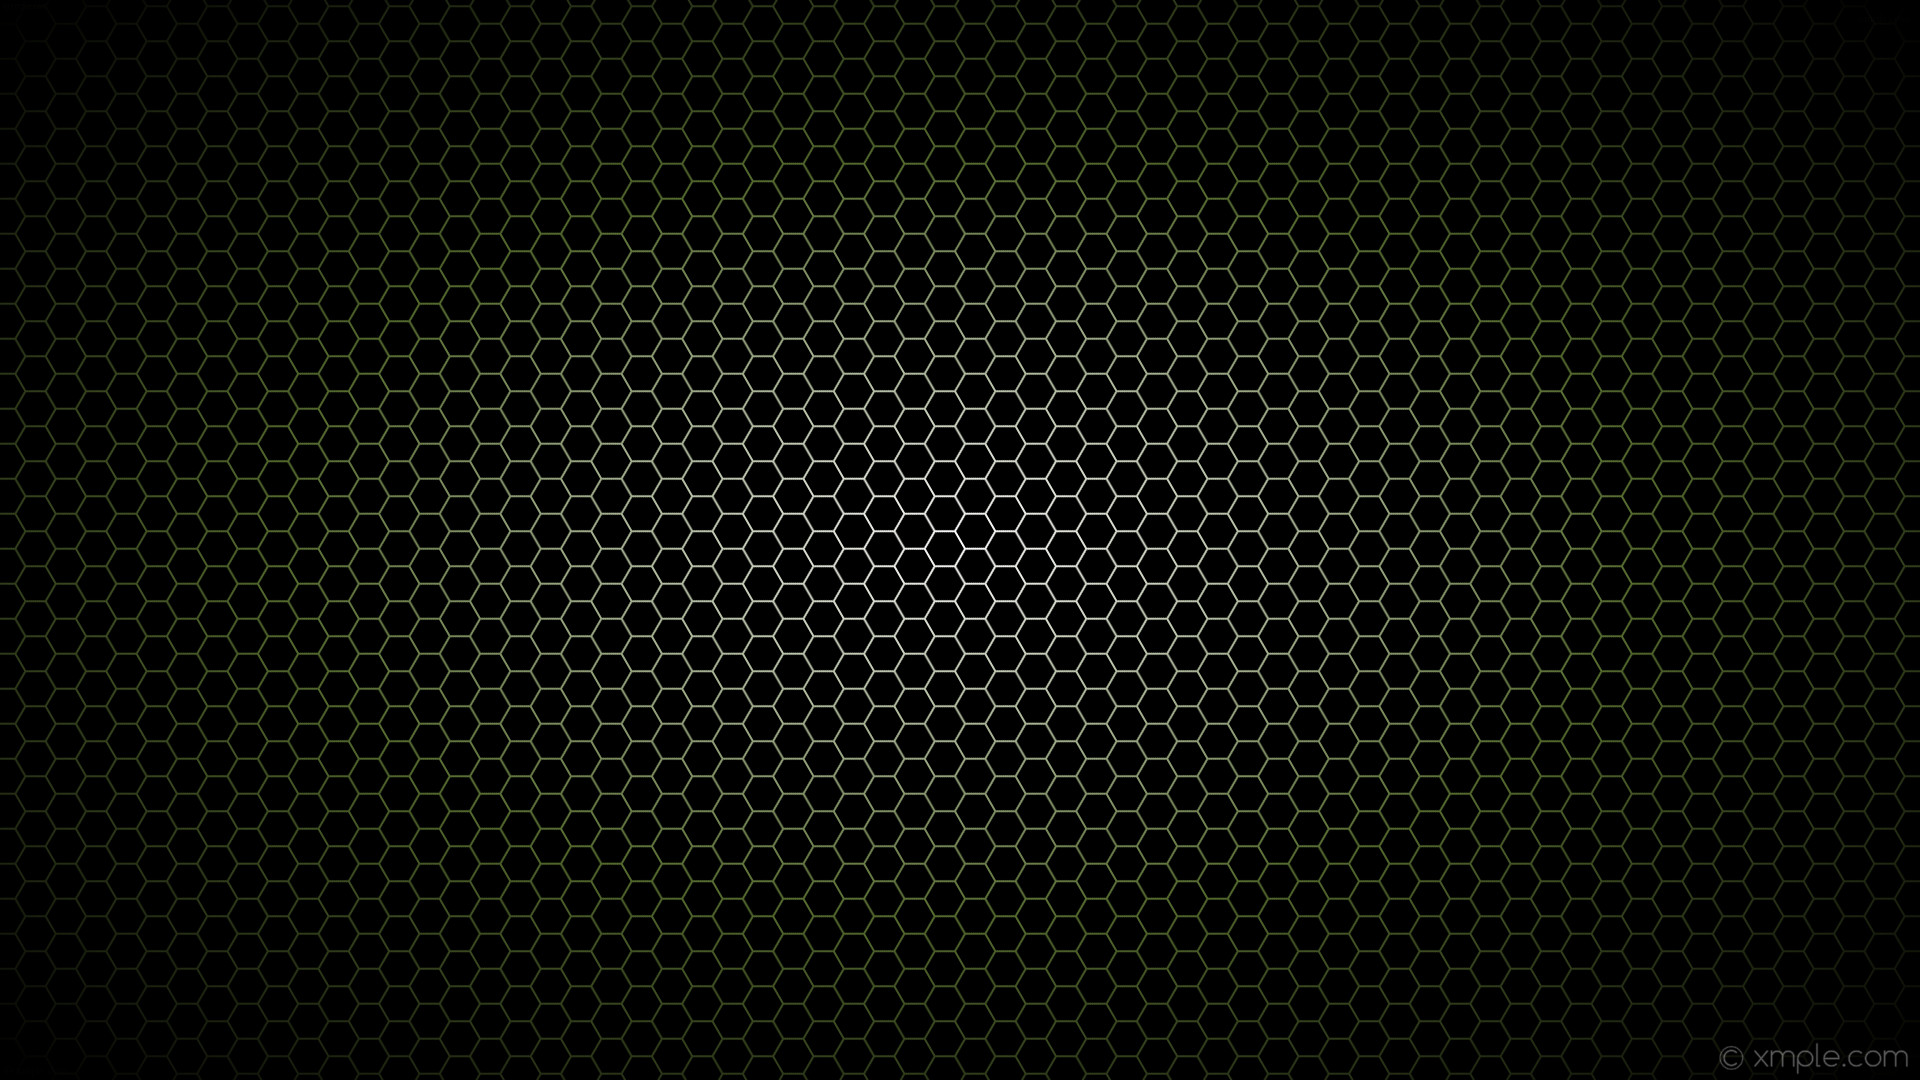 1920x1080 wallpaper black white glow gradient hexagon green dark olive green #000000  #ffffff #556b2f